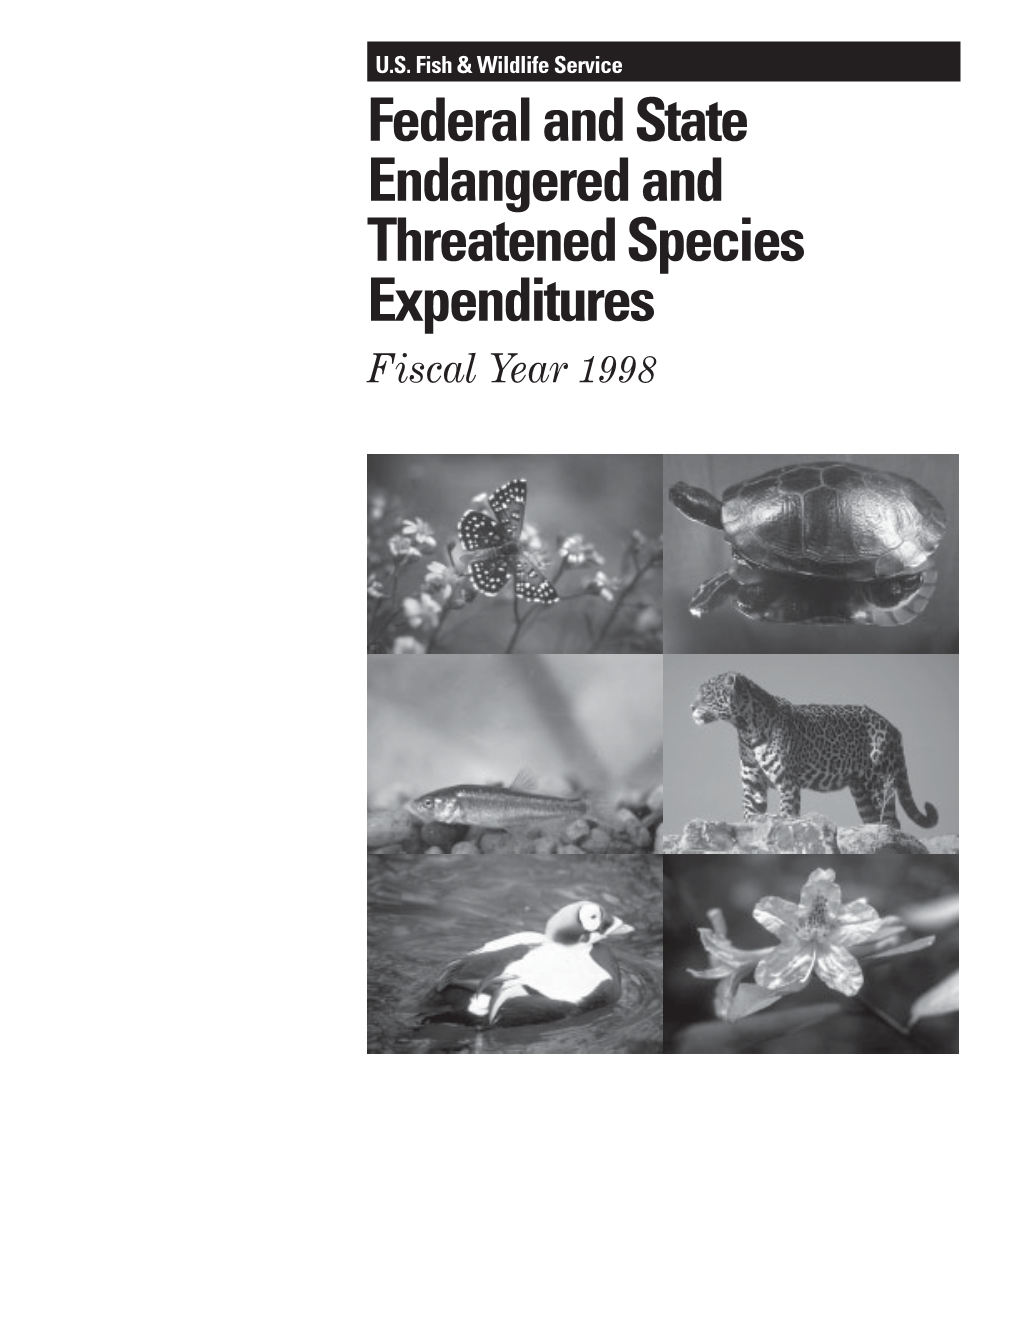 Endangered Species Expenditure Report (1998)